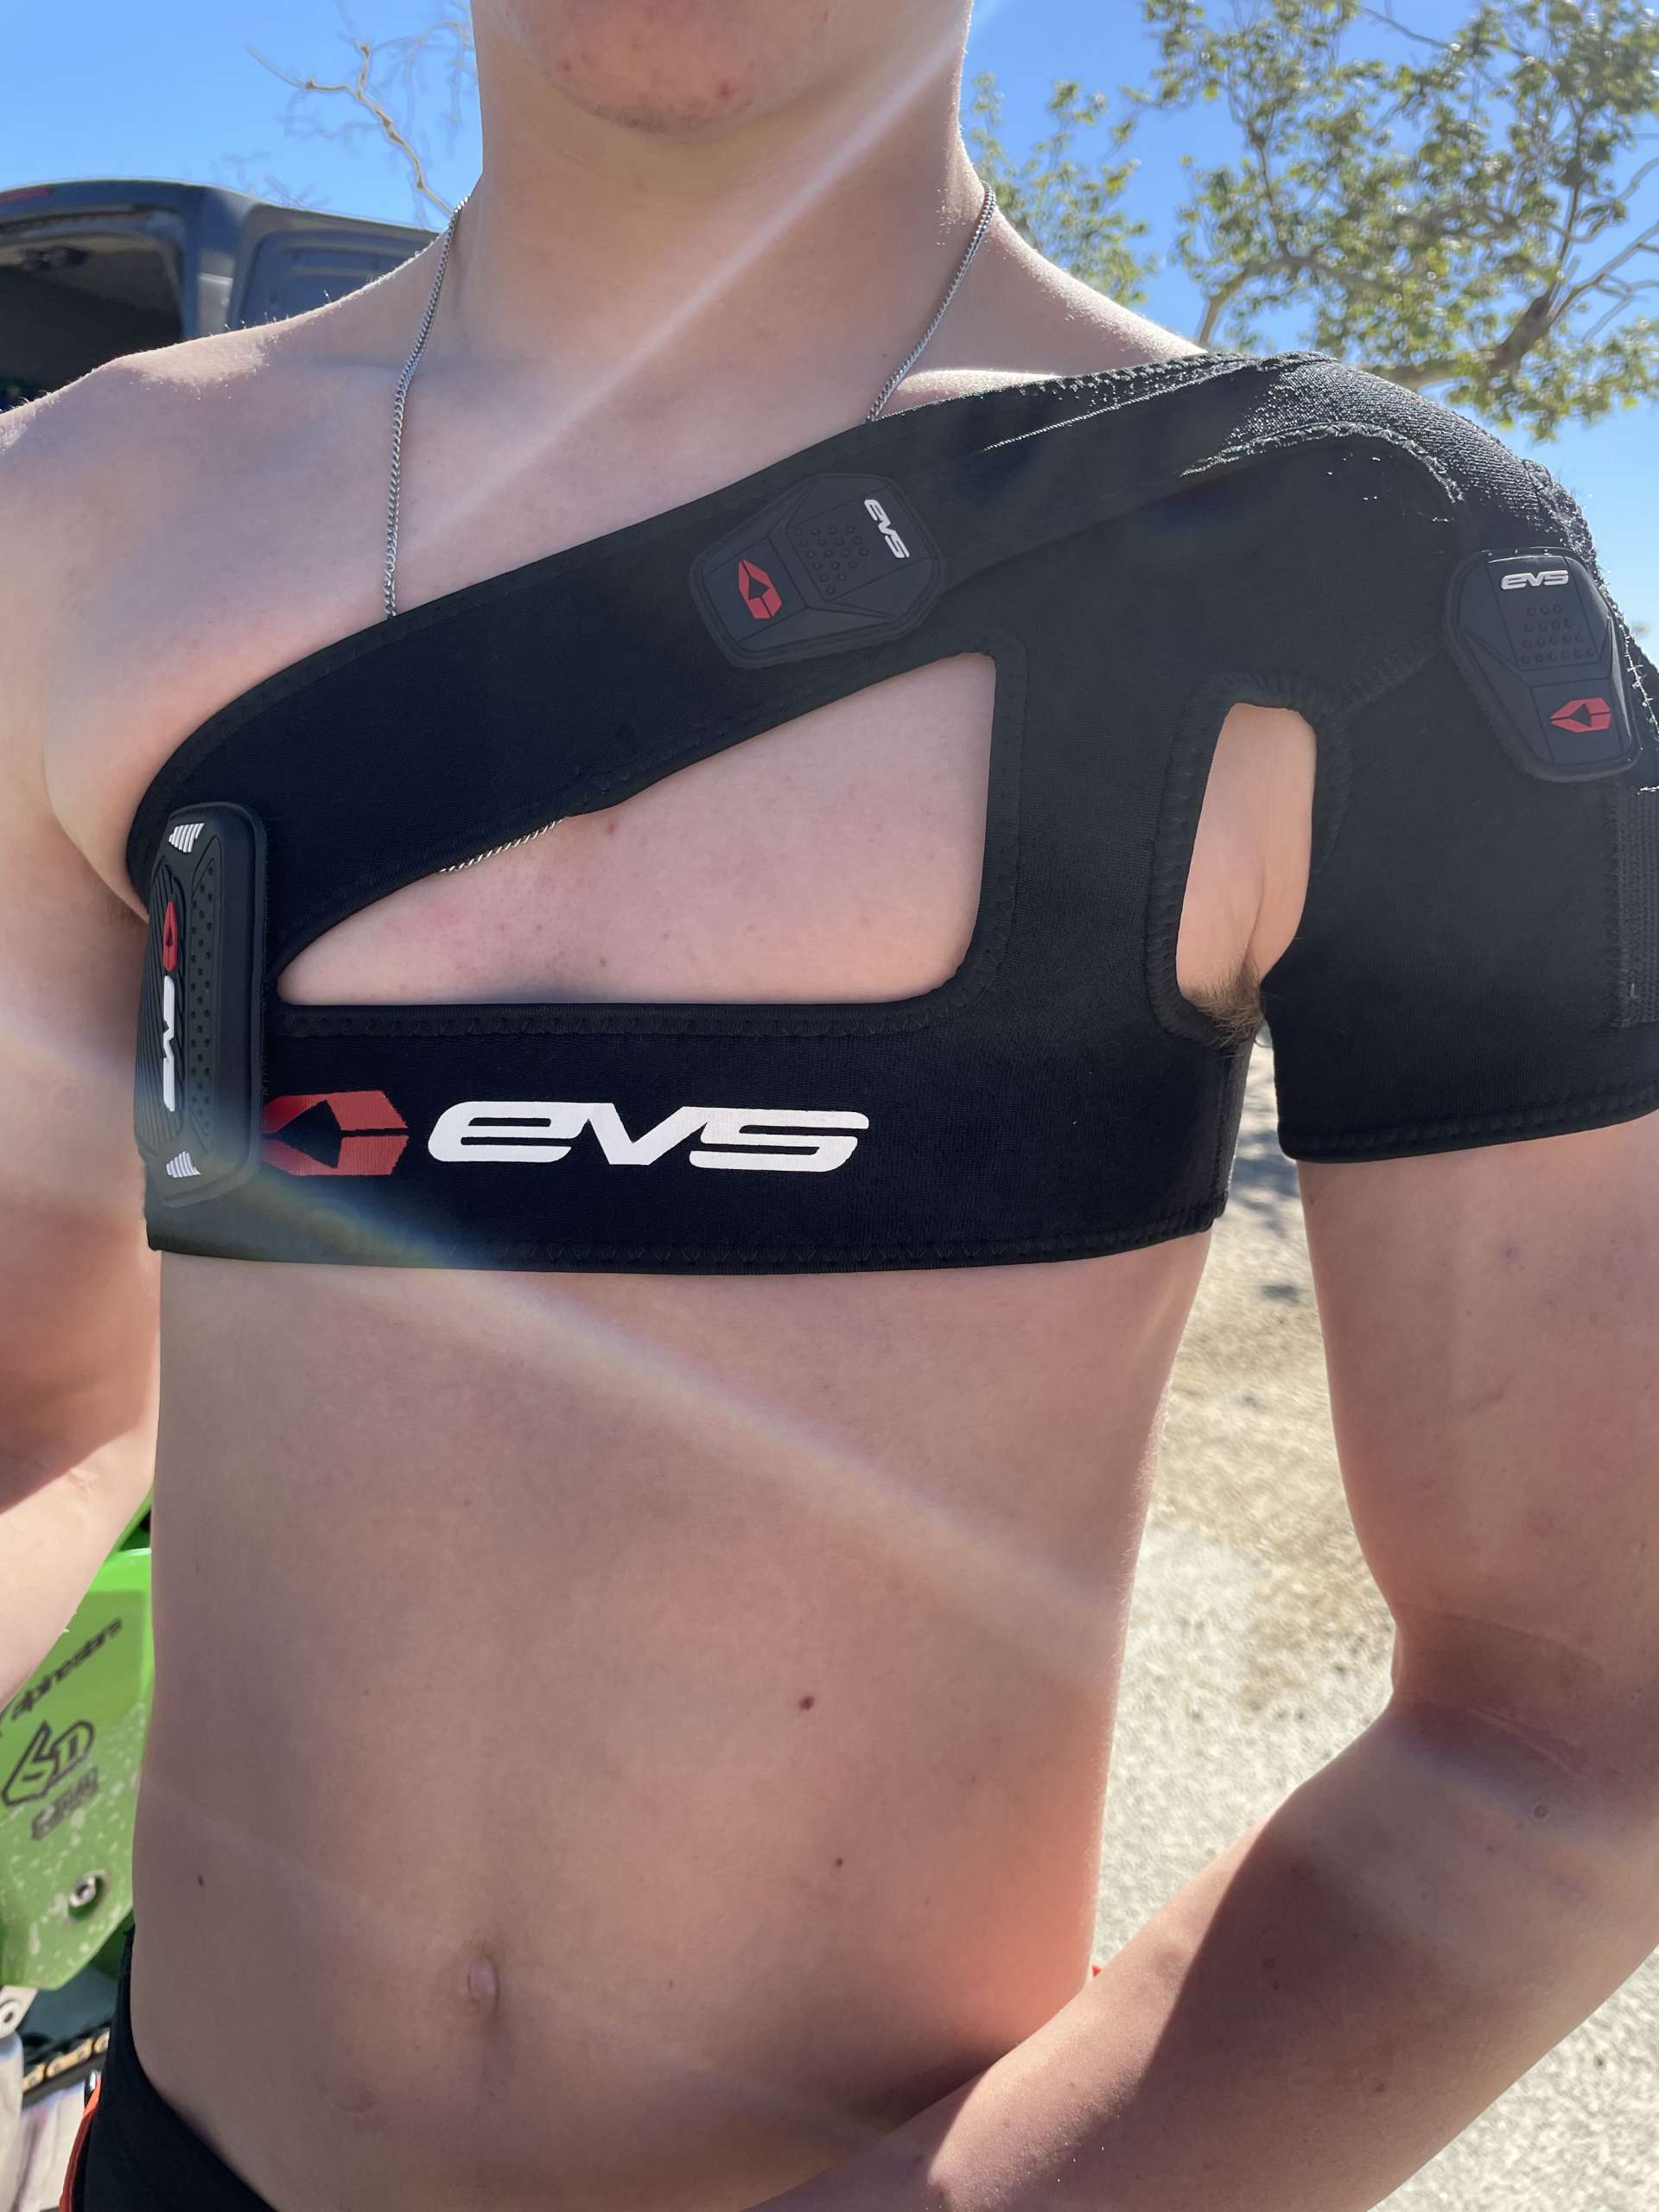 EVS SB03 Shoulder Brace - Adult Body Armour